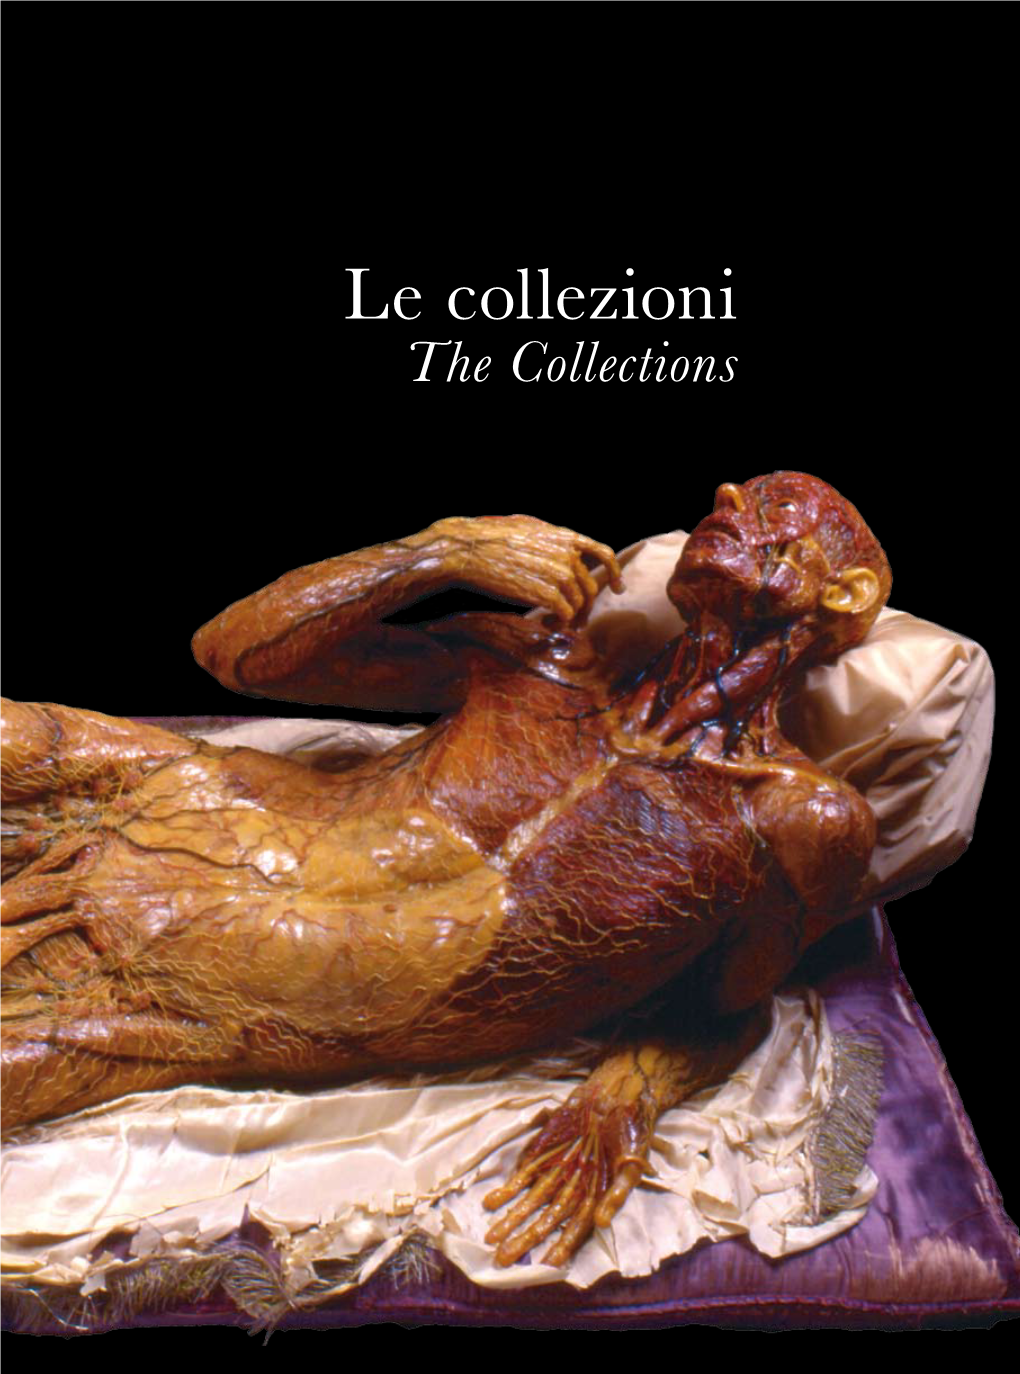 La Collezione Delle Cere Anatomiche the Anatomical Wax Collection Marta Poggesi